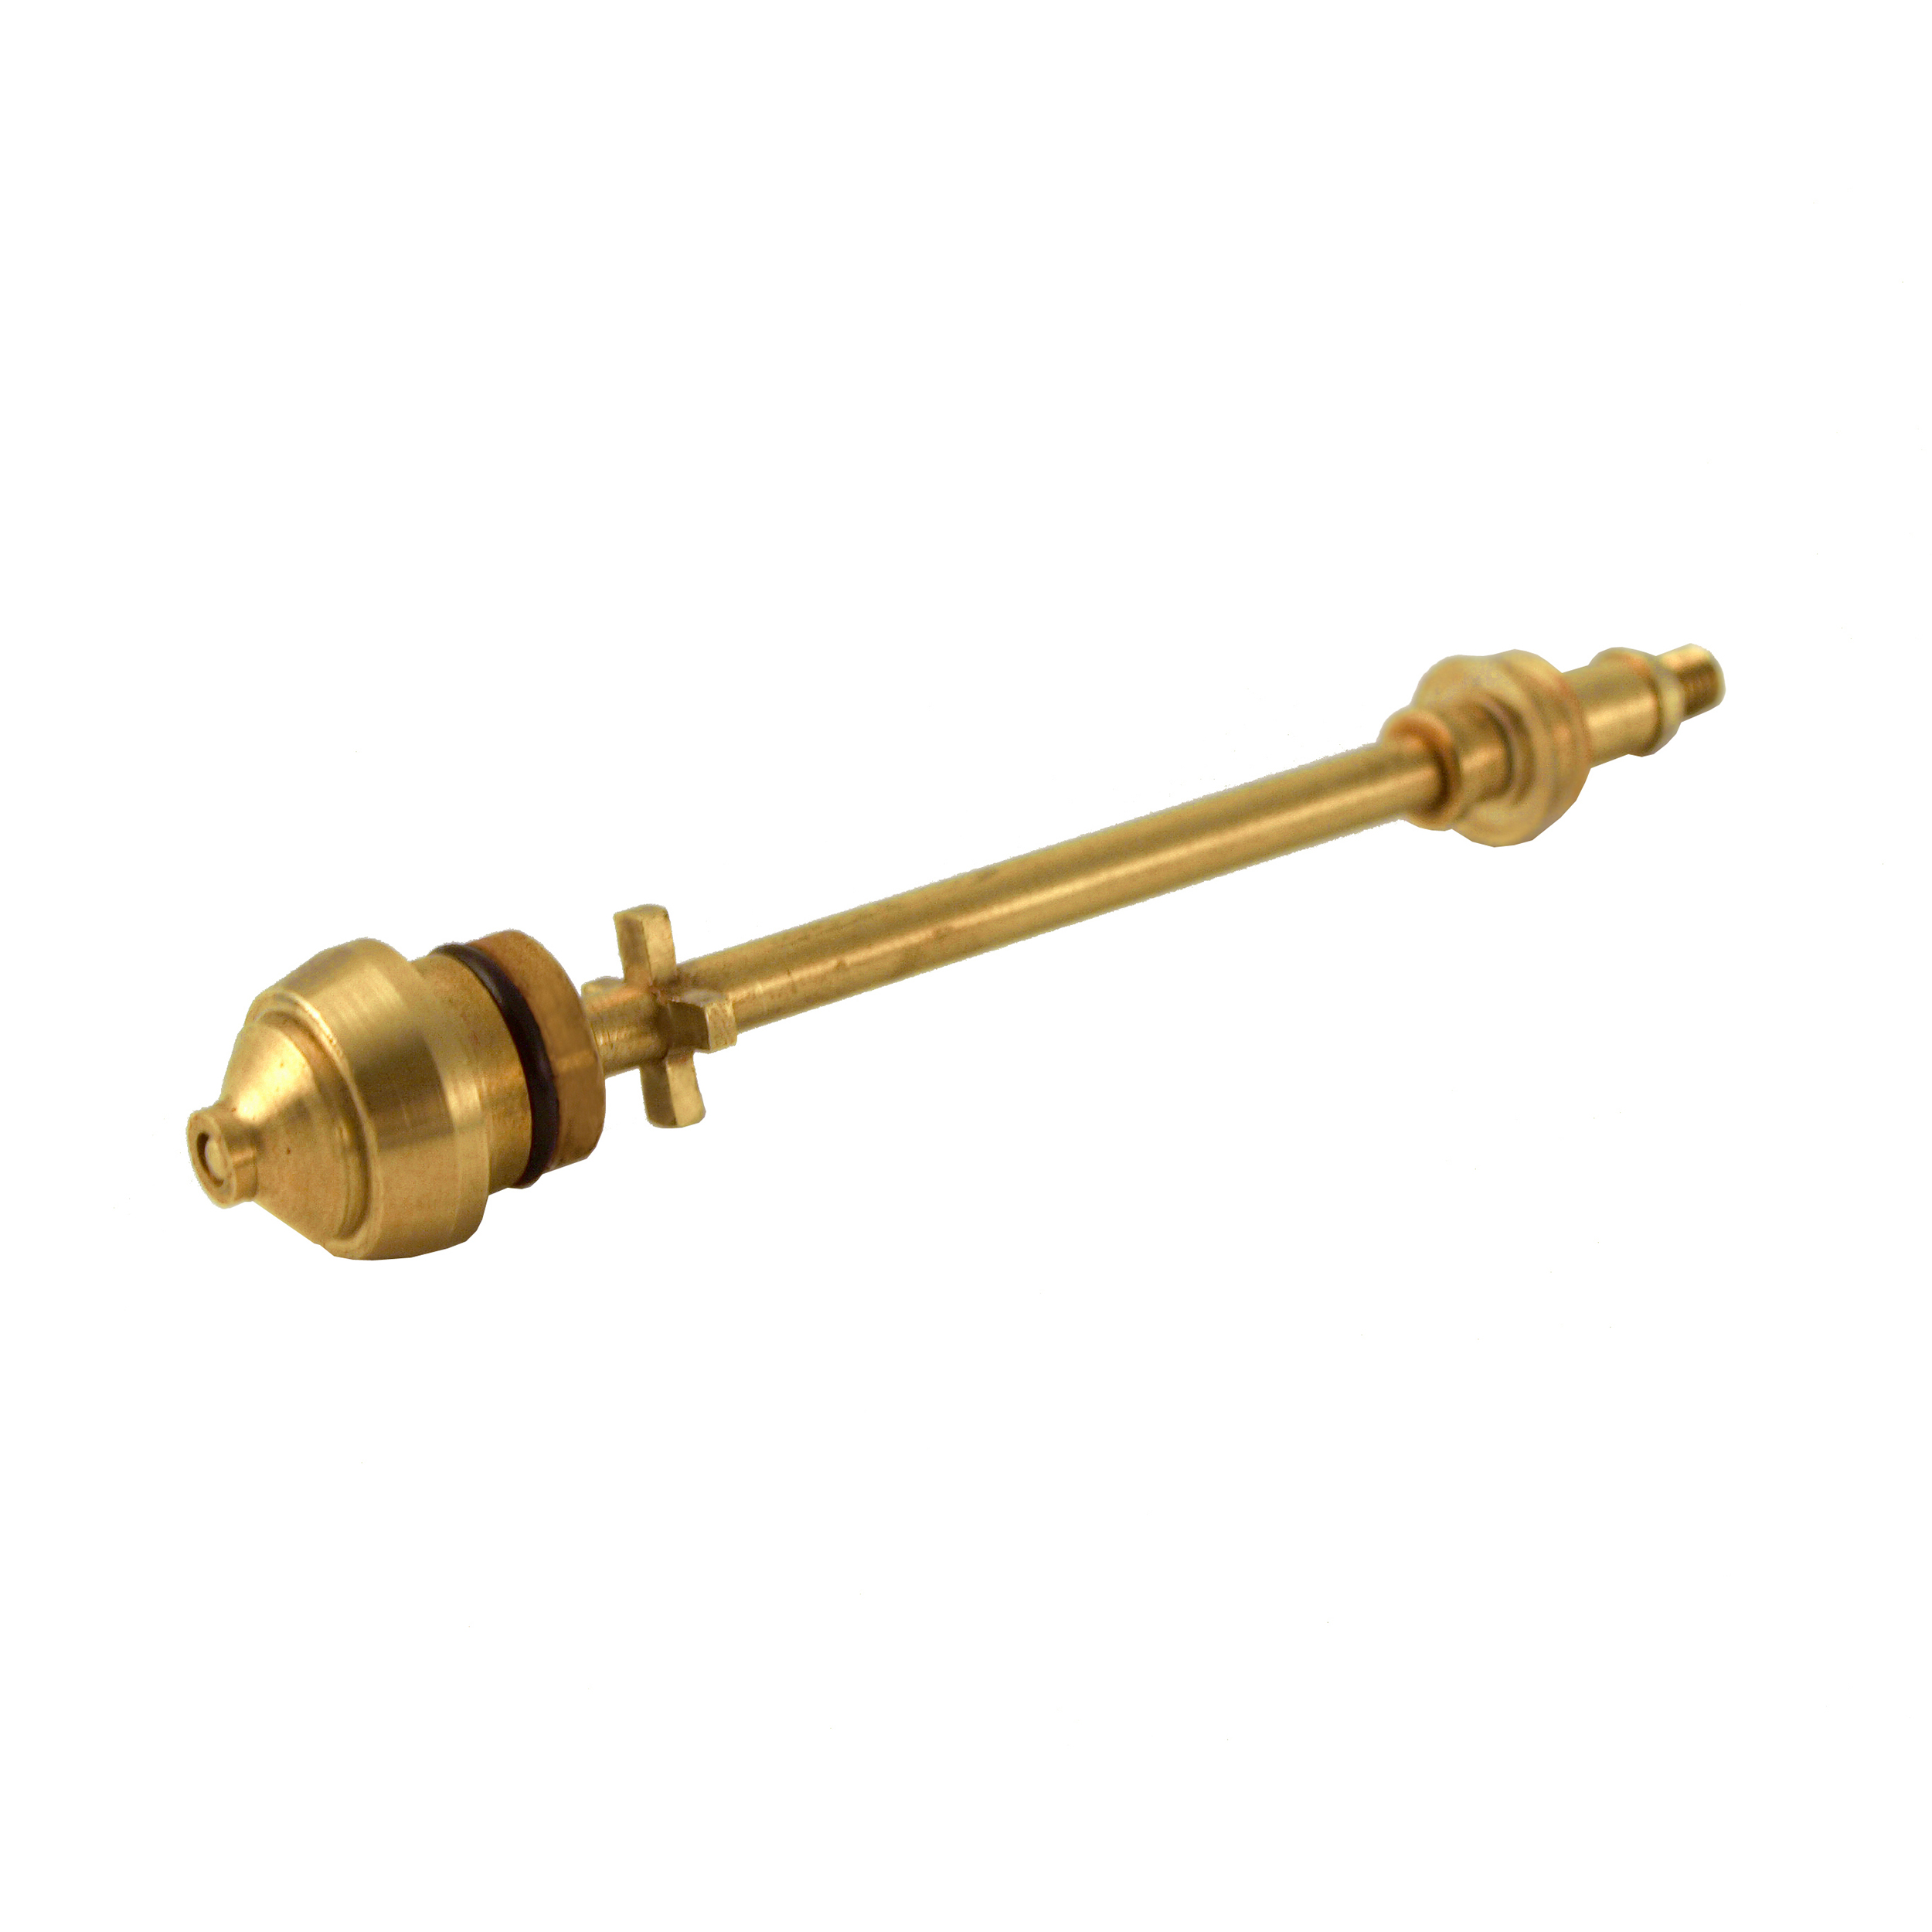 1.0 Mm / .04" Brass Needle Tip Kit For Earlex Spray Station Hv3500